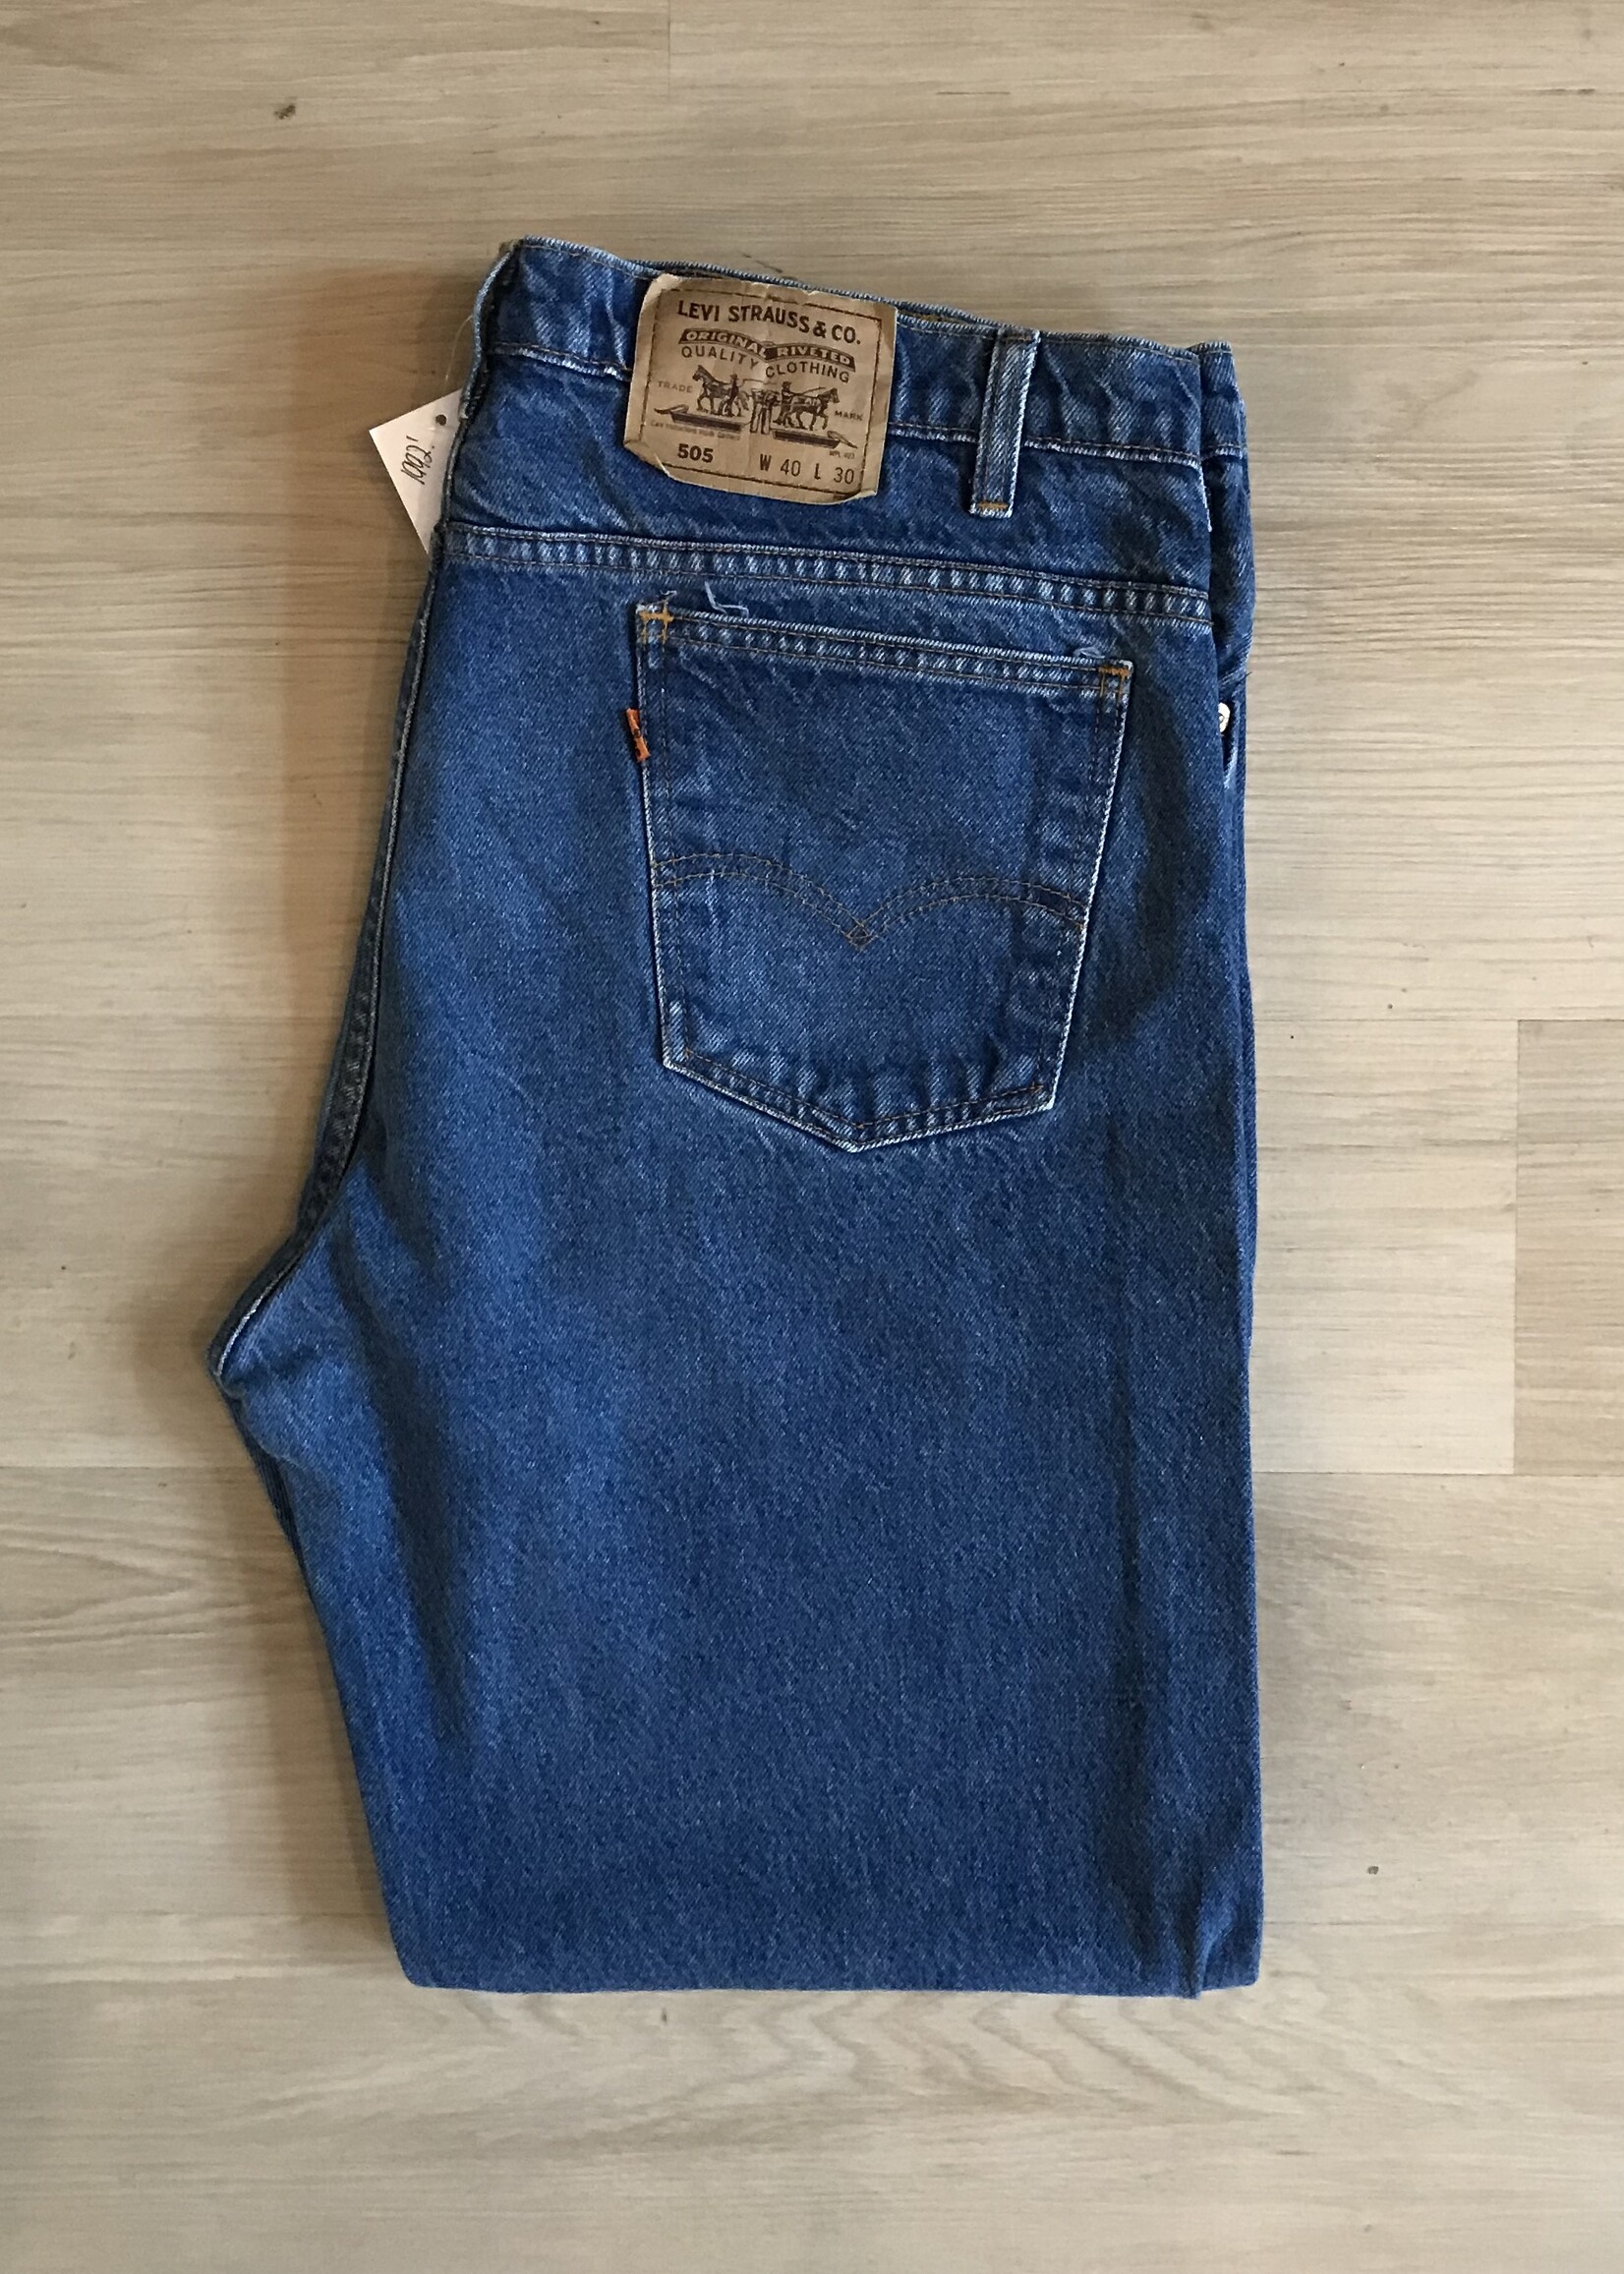 12106	1992 levi's 505 jeans sz 40 x 30